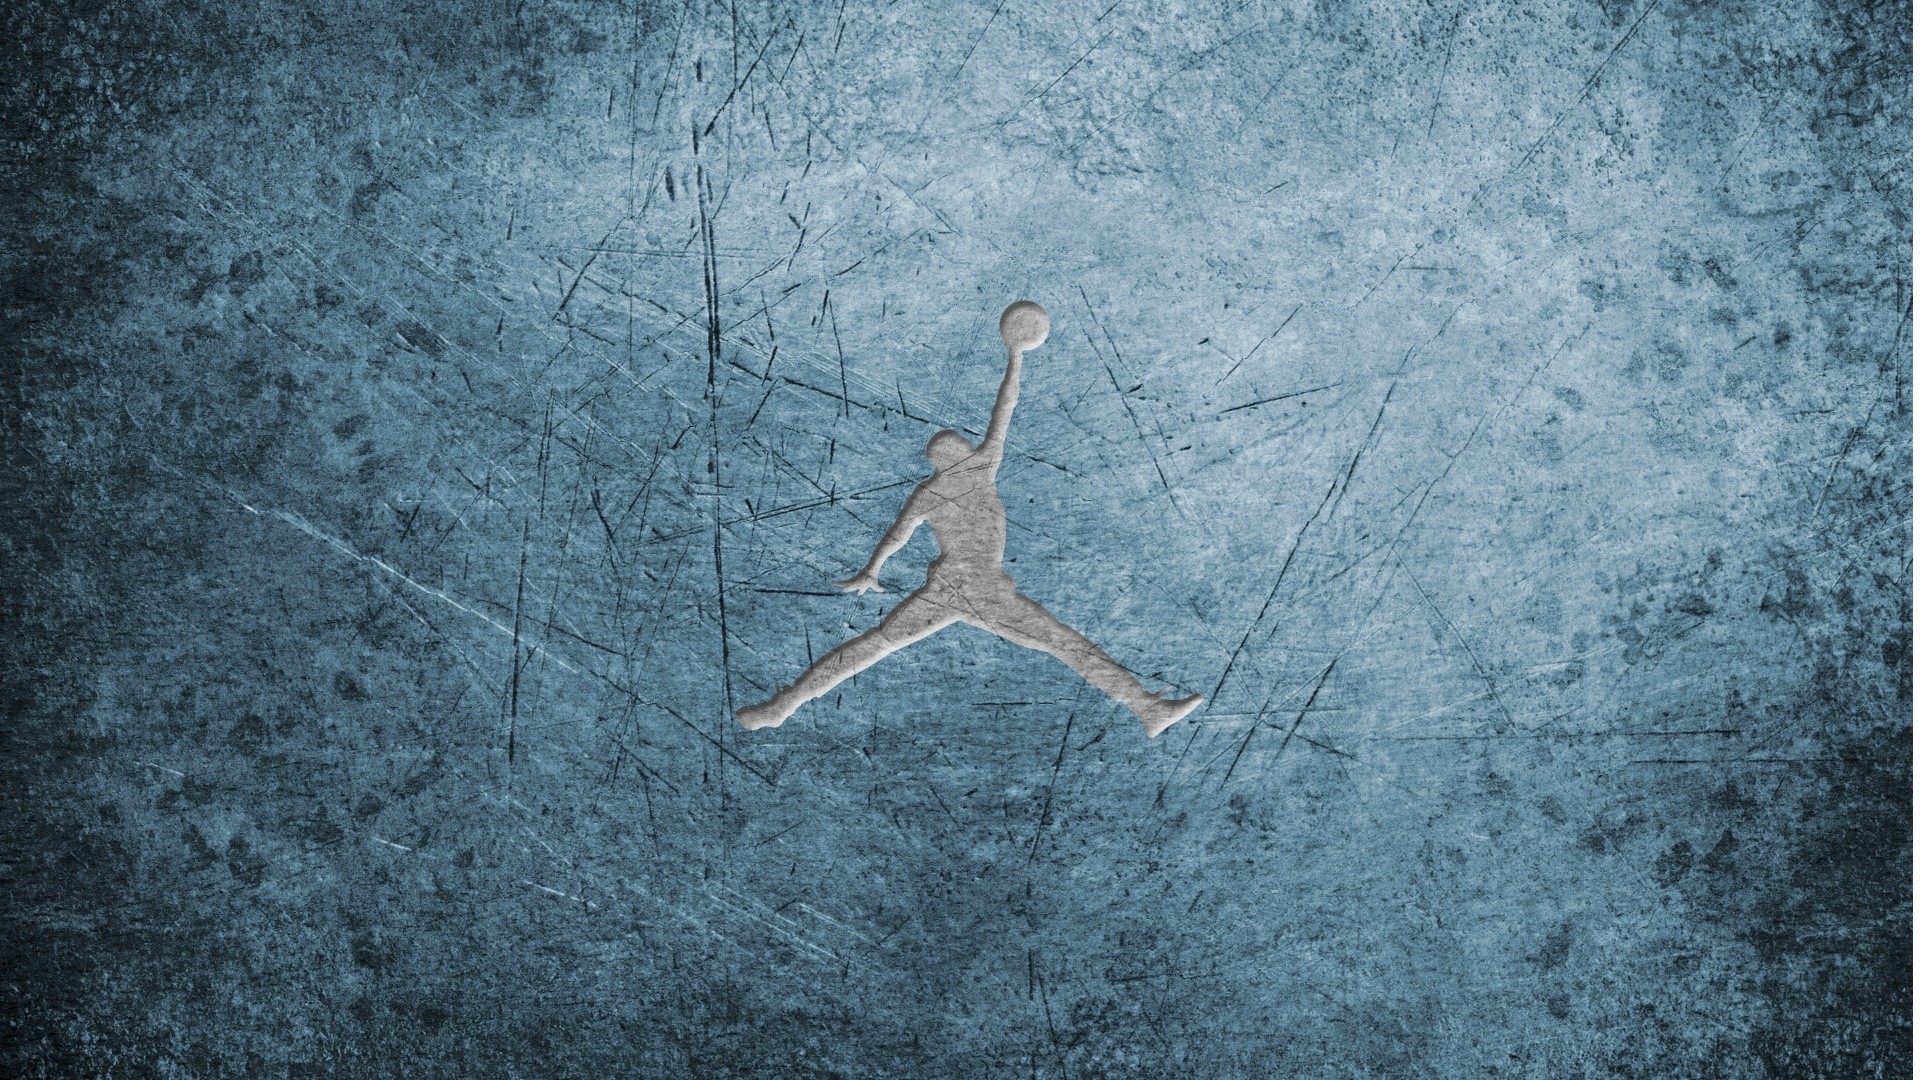 200+] Jordan Logo Wallpapers | Wallpapers.com